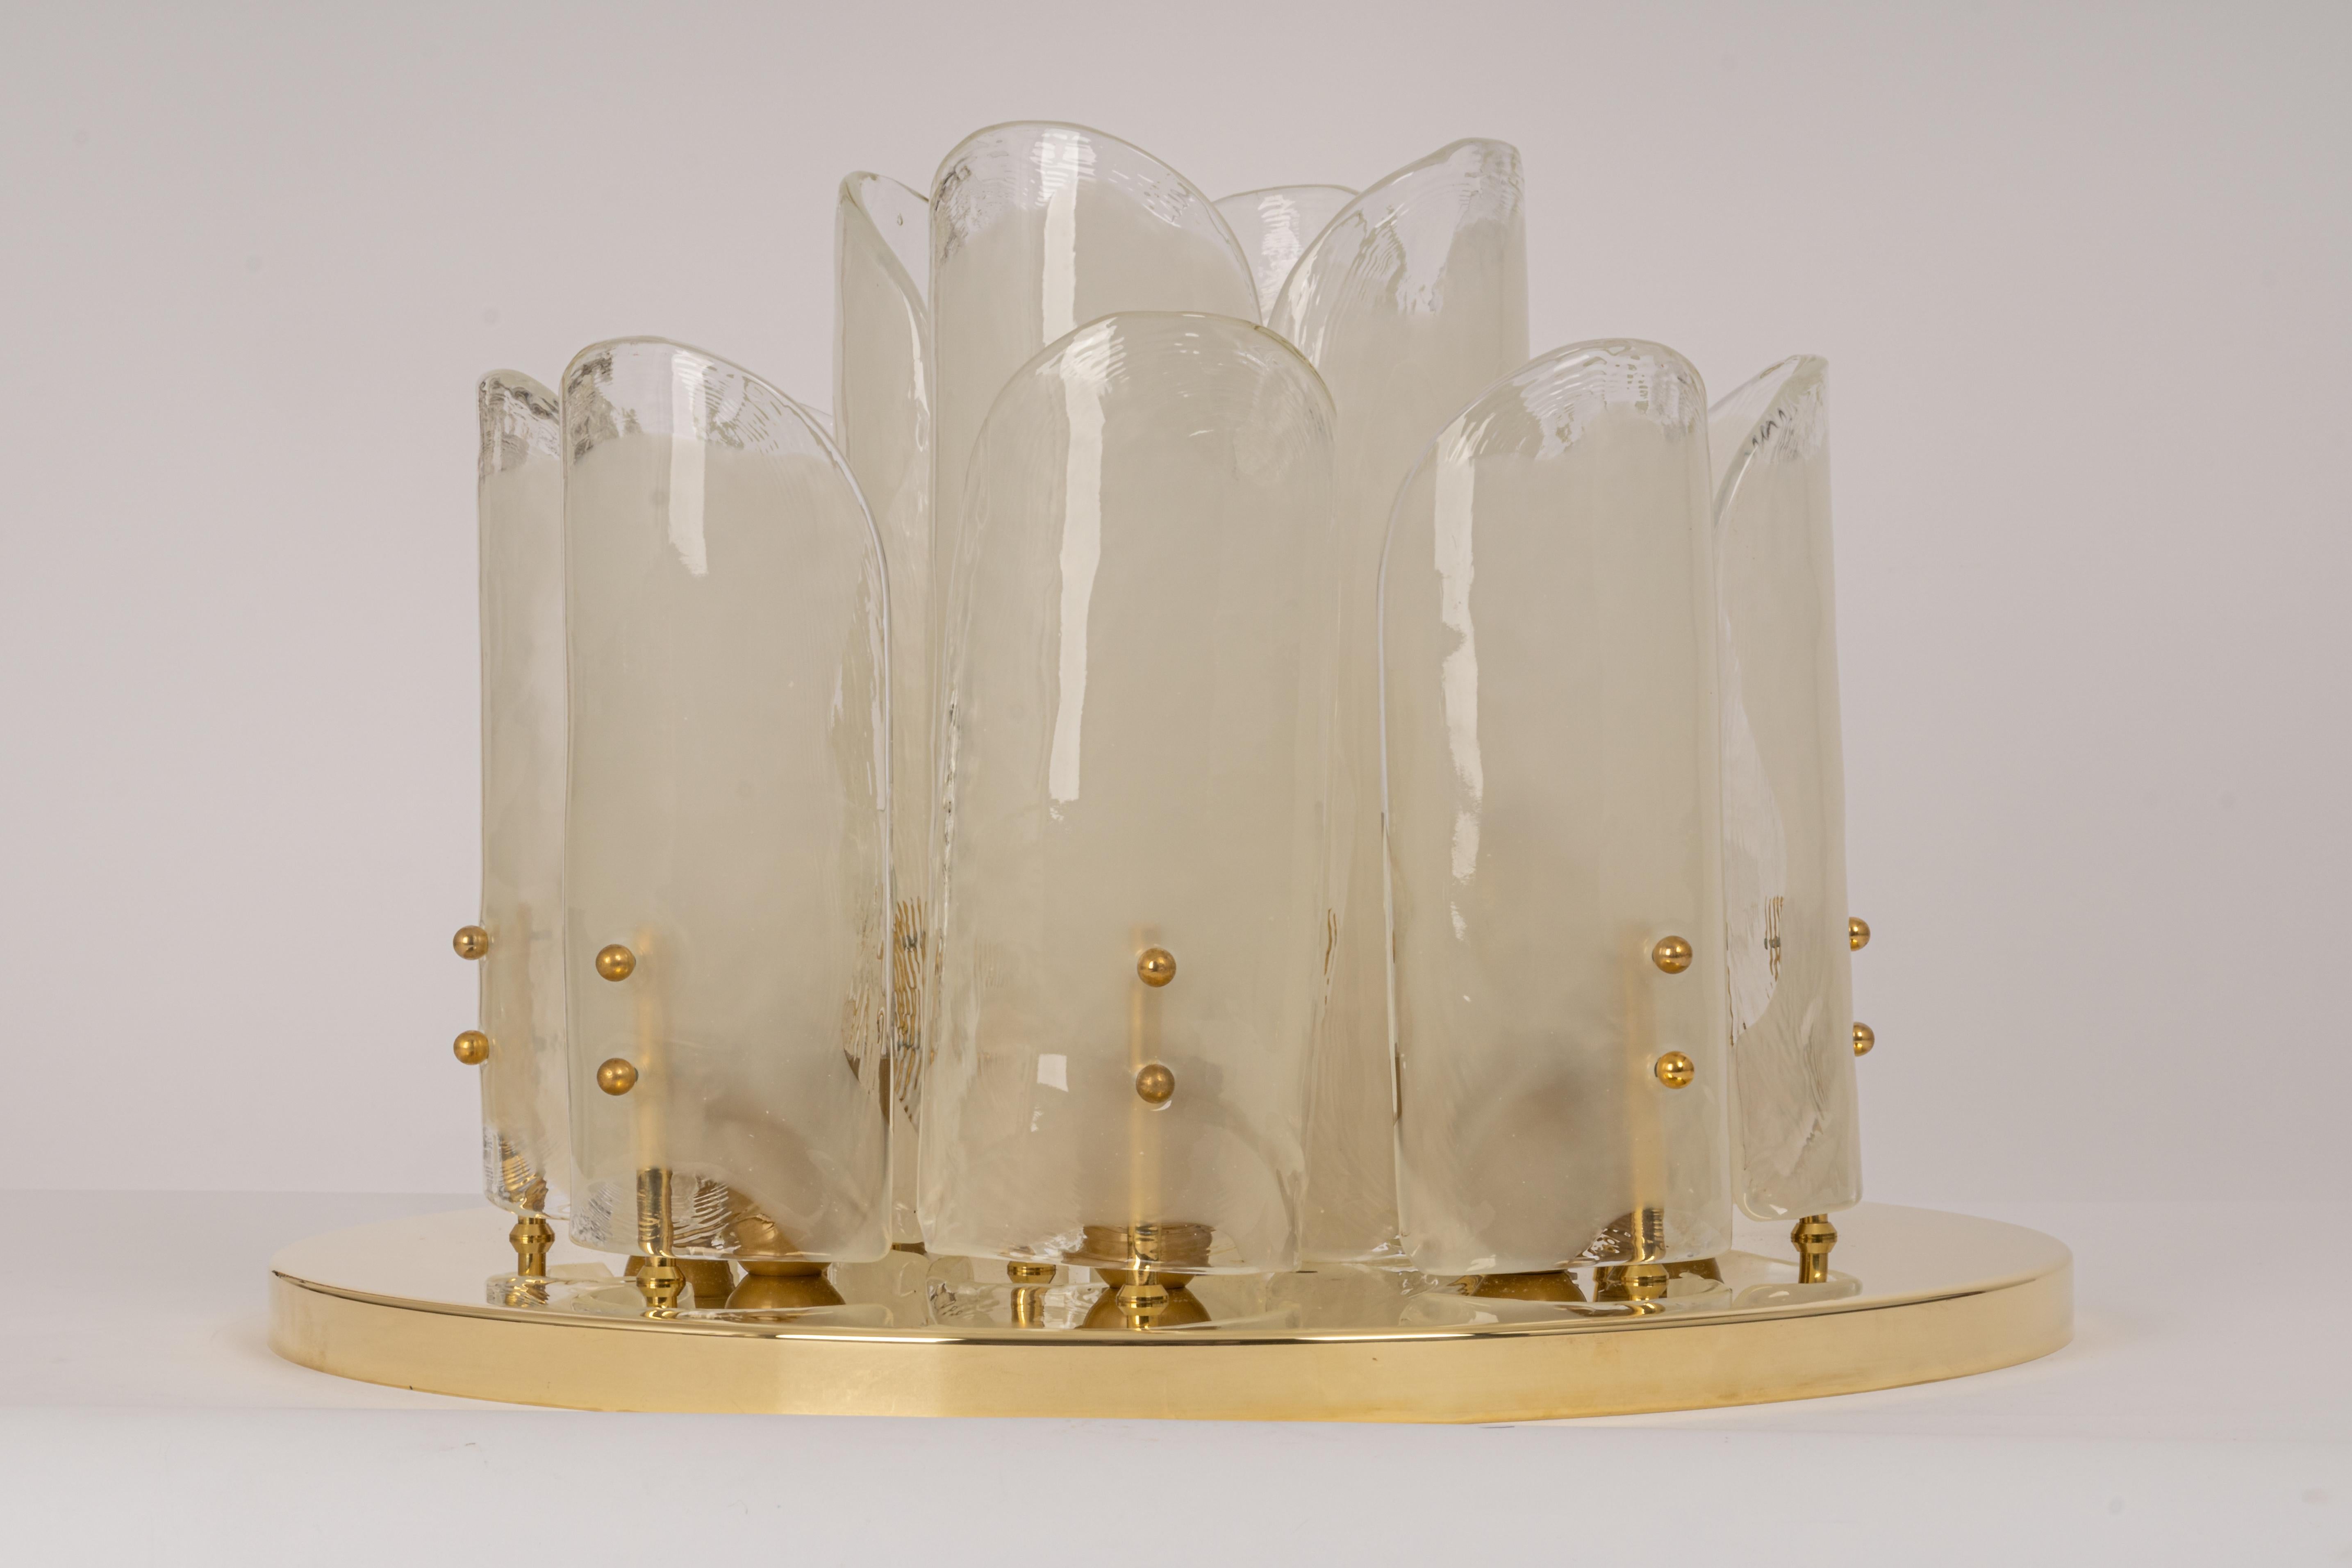 Eine wunderbare Messingleuchte von Kalmar, Österreich, hergestellt ca. 1970-1979.
Tolle Struktur, die viele strukturierte Gläser in Form von Blättern versammelt, die das Licht schön brechen, sehr hohe Qualität.

Hochwertig und in sehr gutem Zustand.